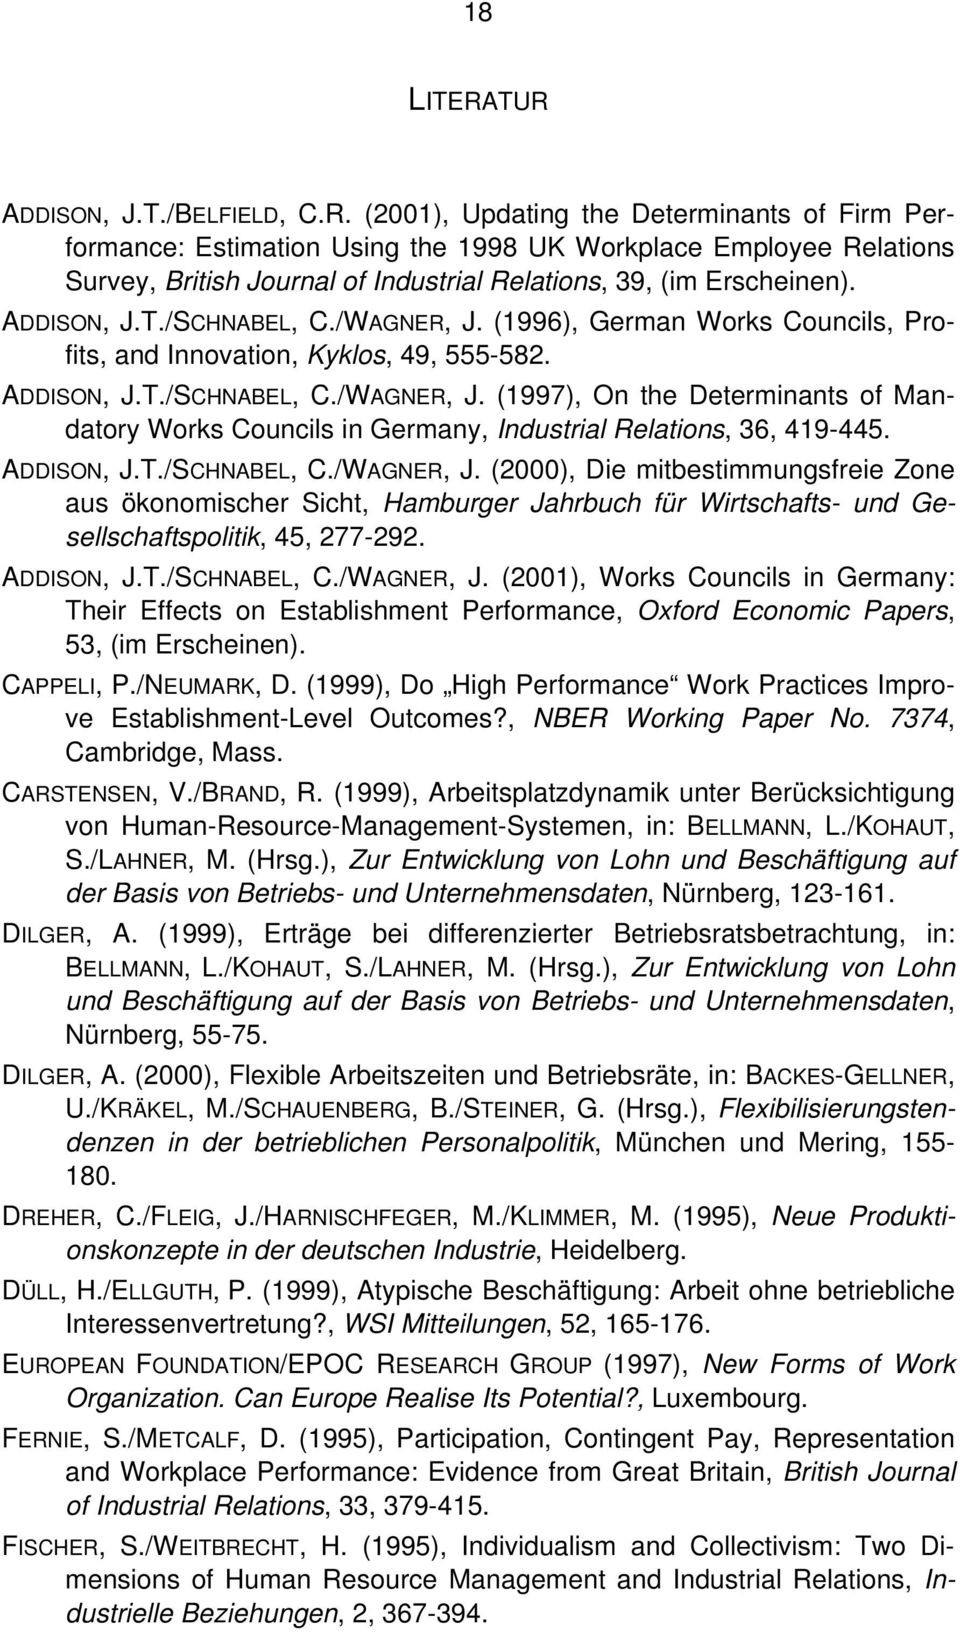 ADDISON, J.T./SCHNABEL, C./WAGNER, J. (2000), Die mitbestimmungsfreie Zone aus ökonomischer Sicht, Hamburger Jahrbuch für Wirtschafts- und Gesellschaftspolitik, 45, 277-292. ADDISON, J.T./SCHNABEL, C./WAGNER, J. (2001), Works Councils in Germany: Their Effects on Establishment Performance, Oxford Economic Papers, 53, (im Erscheinen).